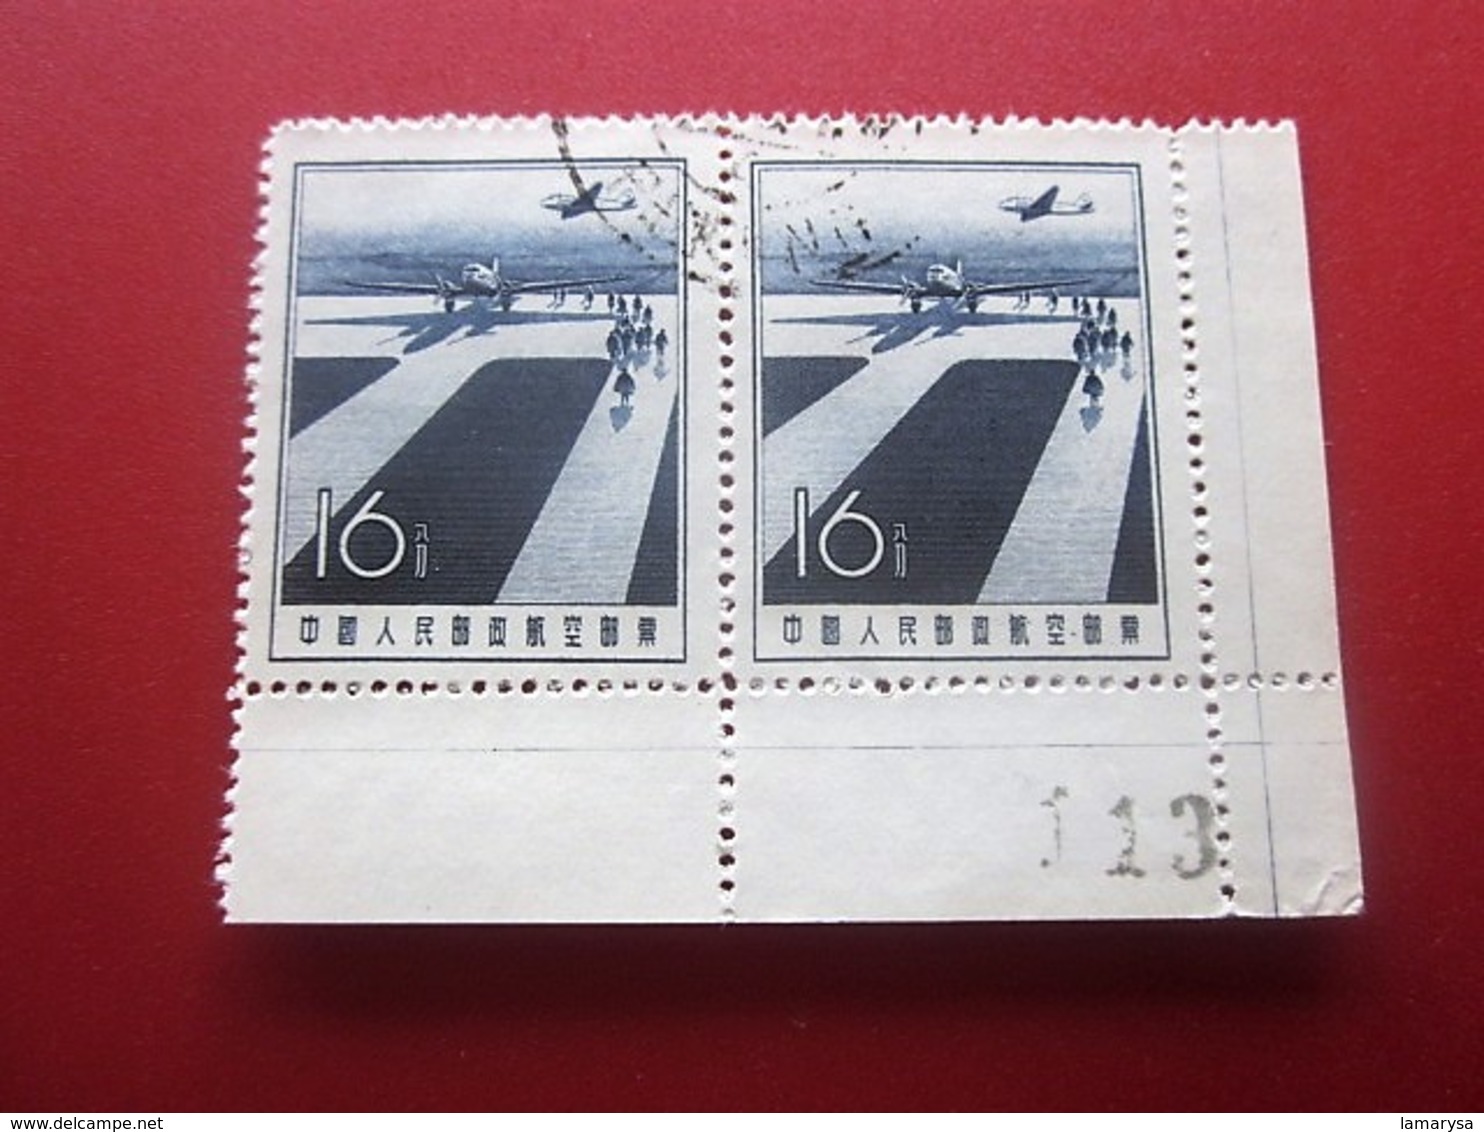 Chine Bloc 2 Timbres-Stamps-République Populaire-Poste Aérienne-Asia China-Popular Republic Airmail-亚洲中国第4区邮票热门共和国航空邮件 - Posta Aerea